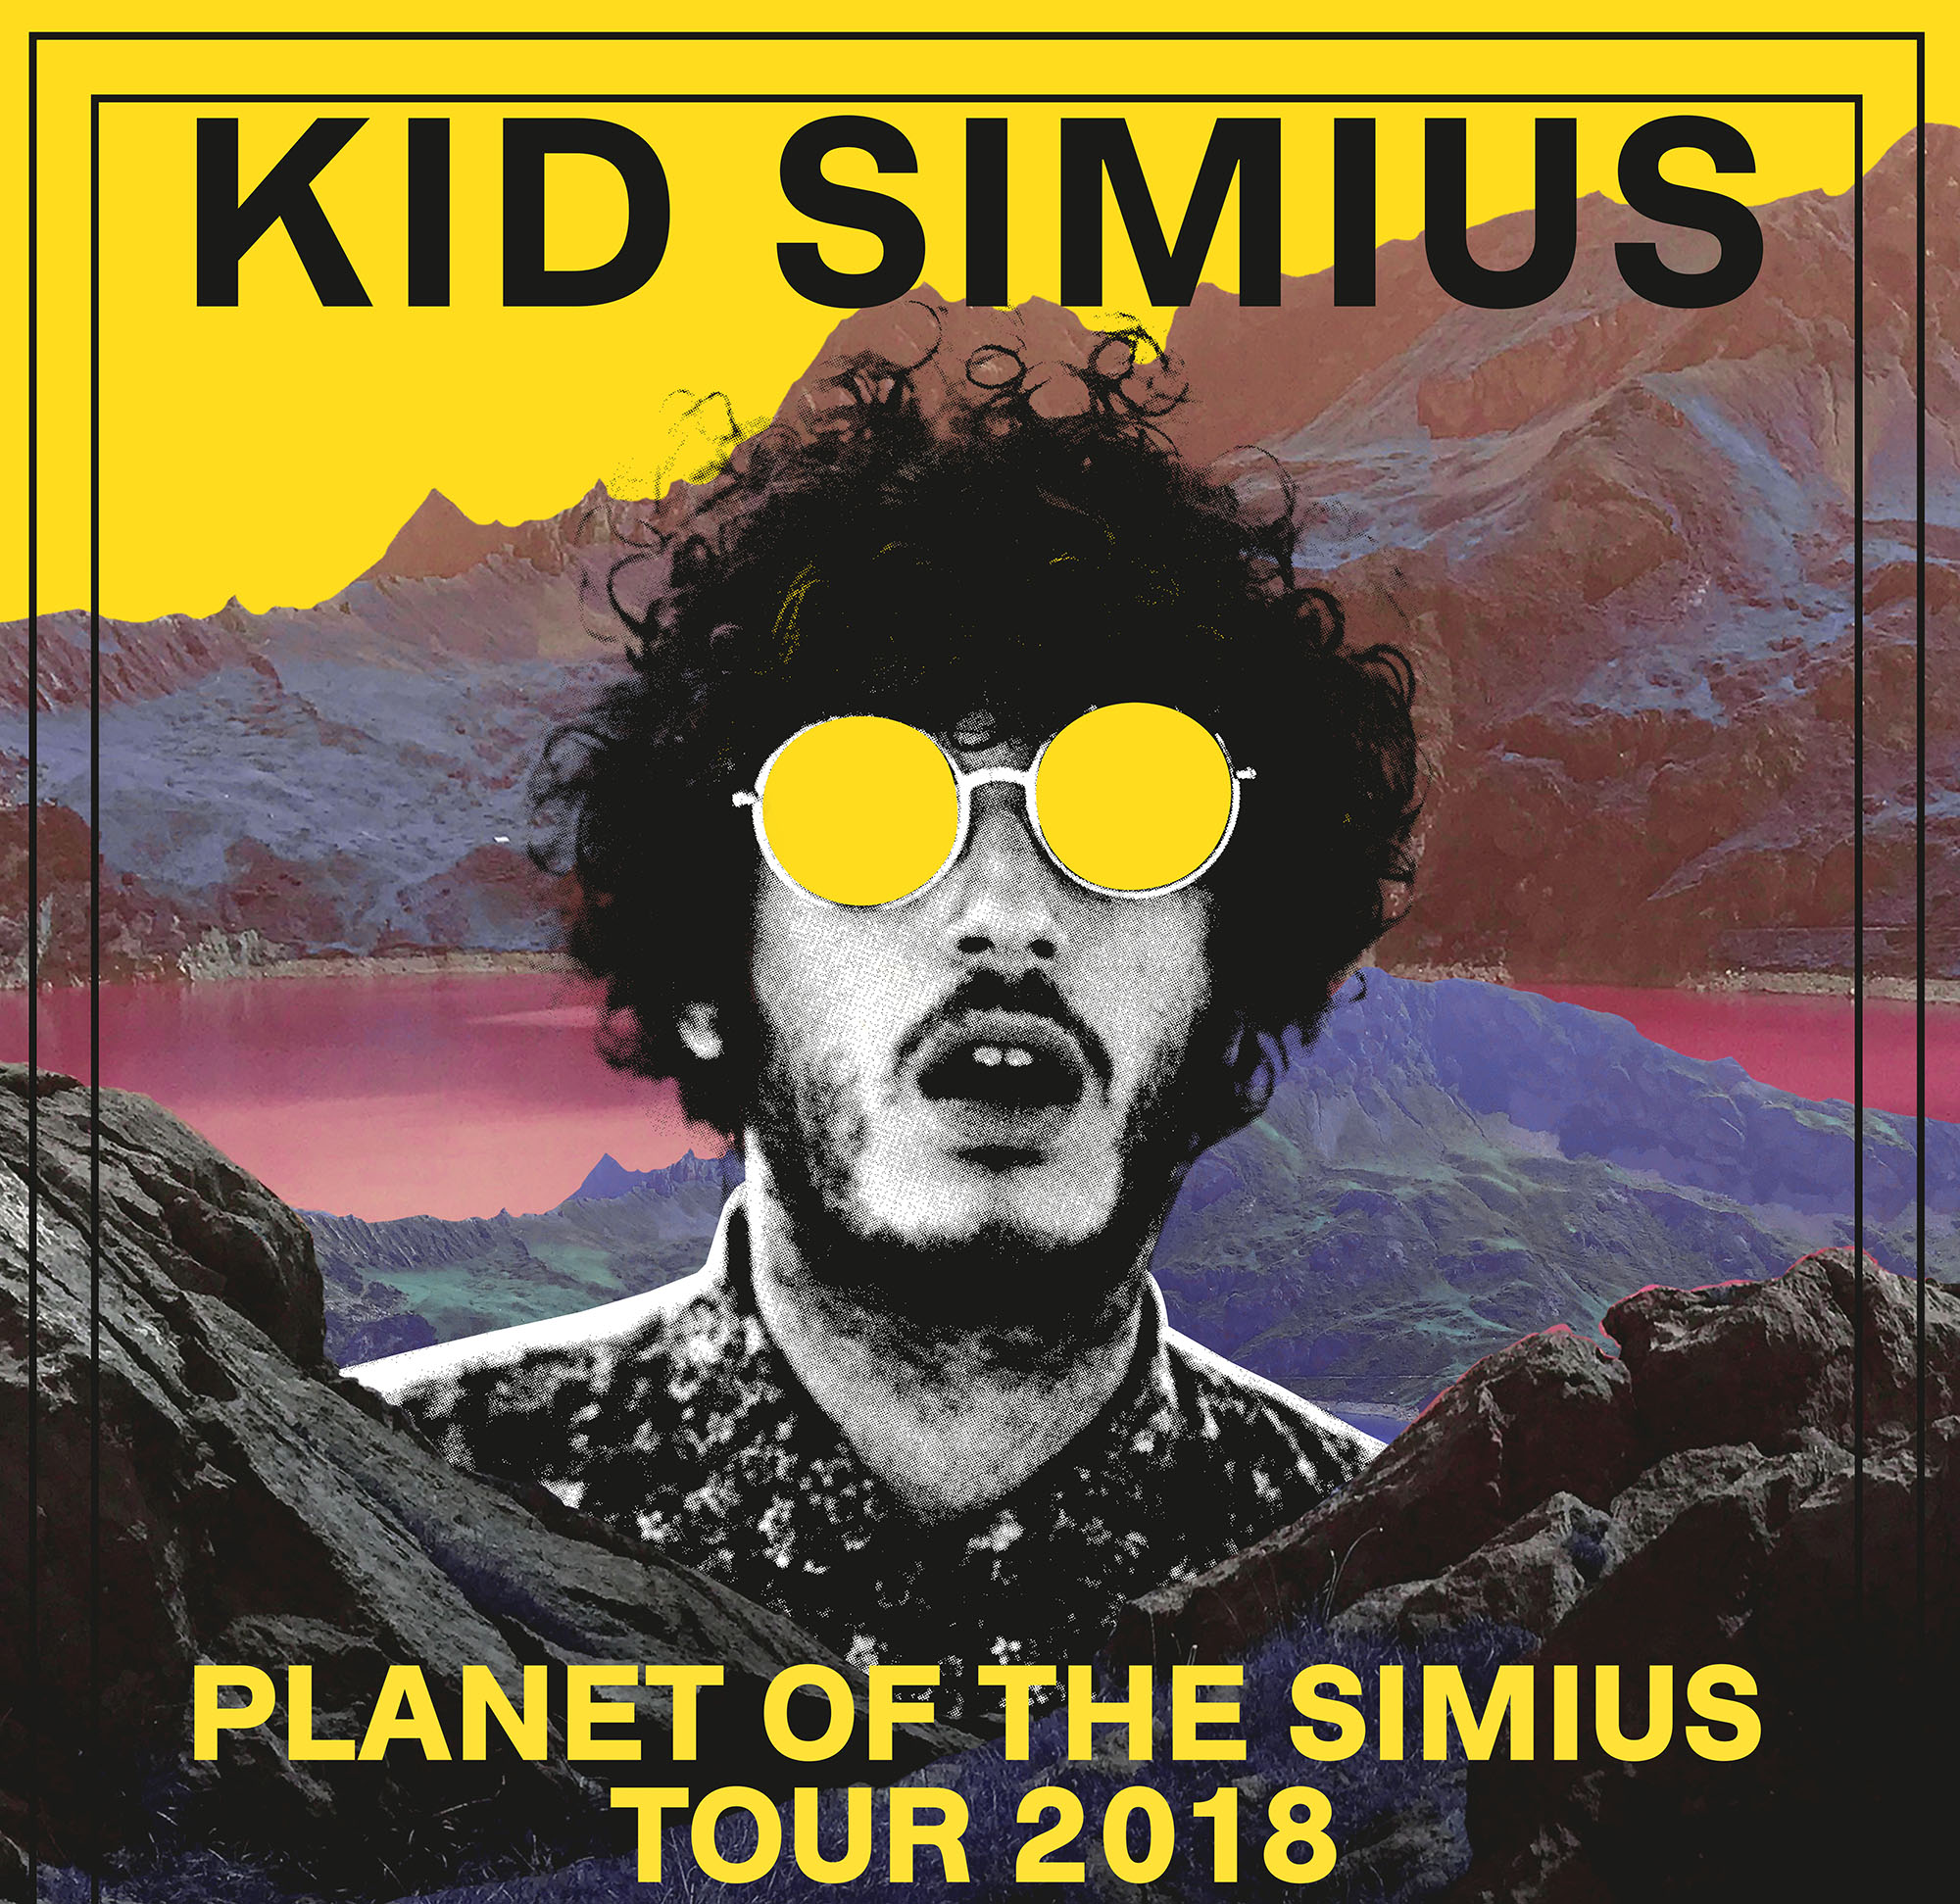 KID SIMIUS PLANET OF THE SIMIUS TOUR 2018